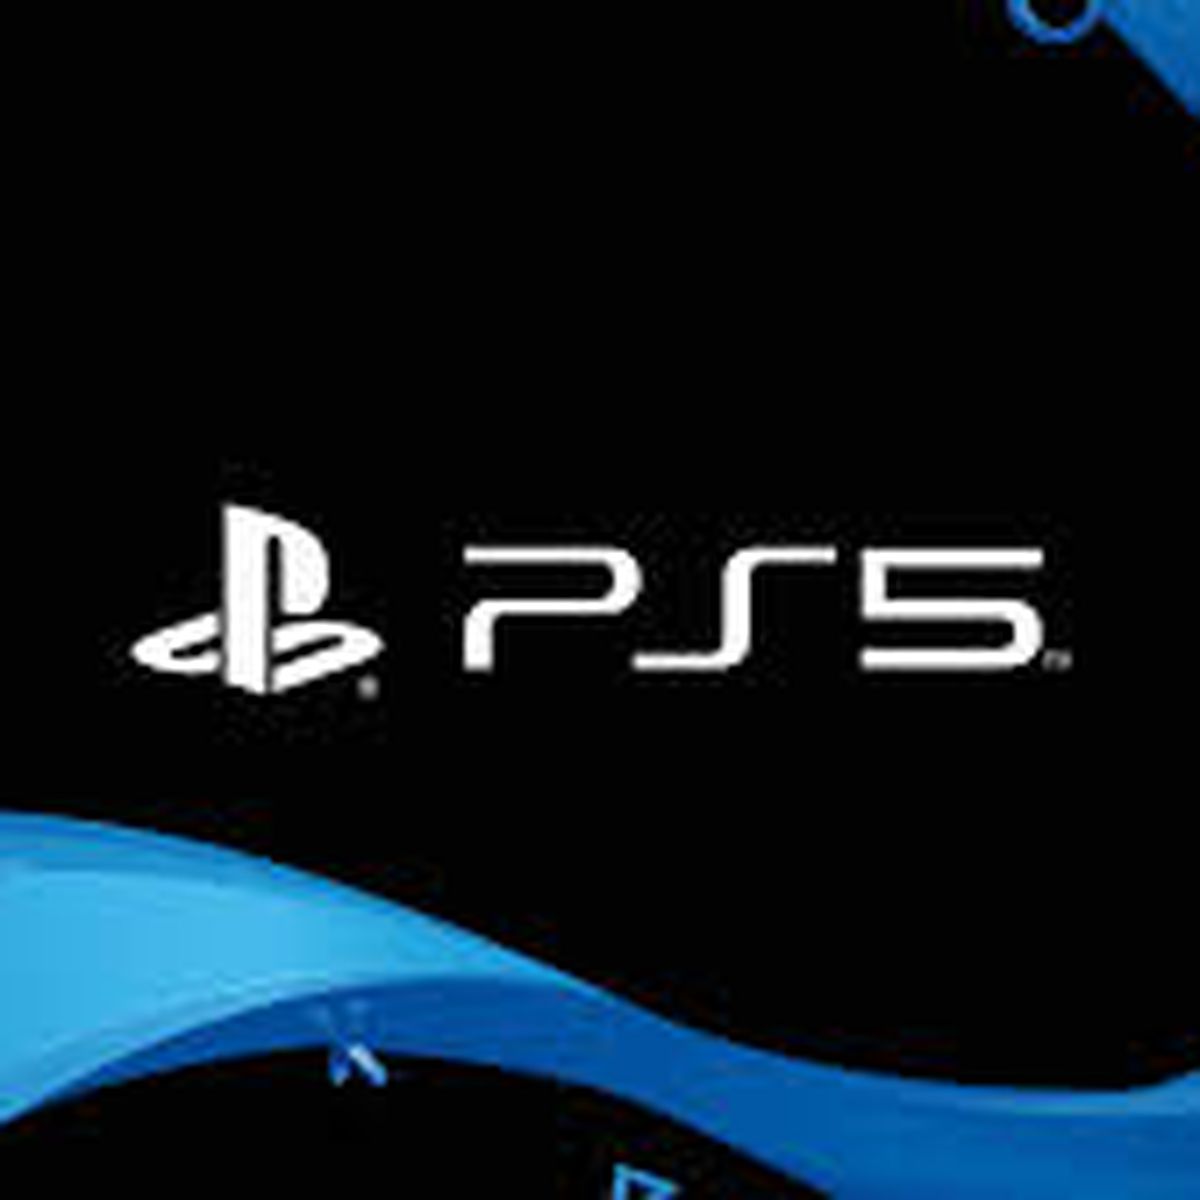 SenasNerd - Preço e a data de lançamento da PS5 atualizados O